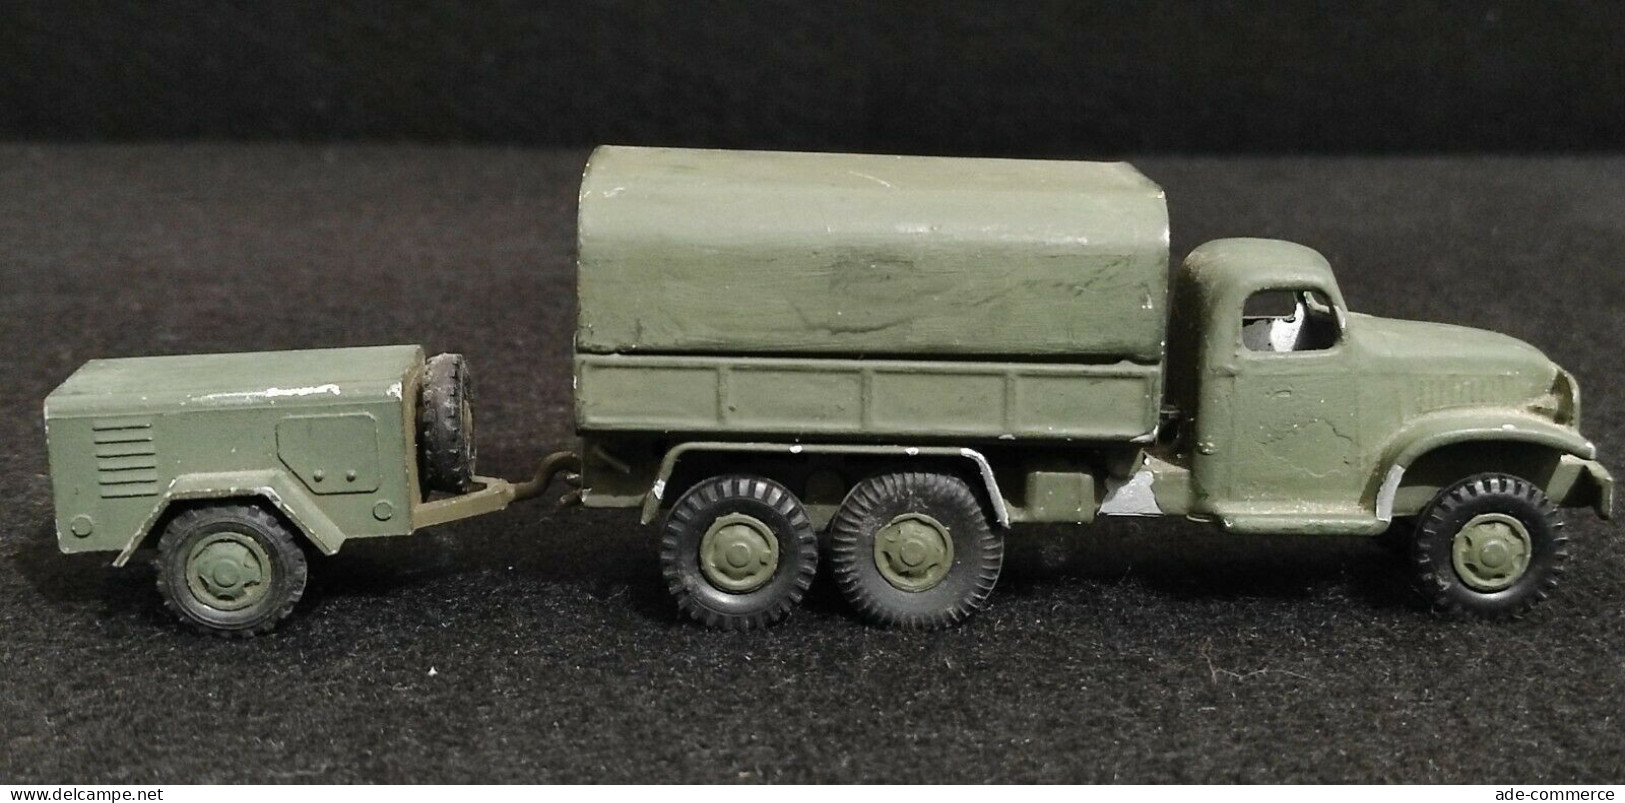 Modellino Camion Militare con Carrello in Metallo